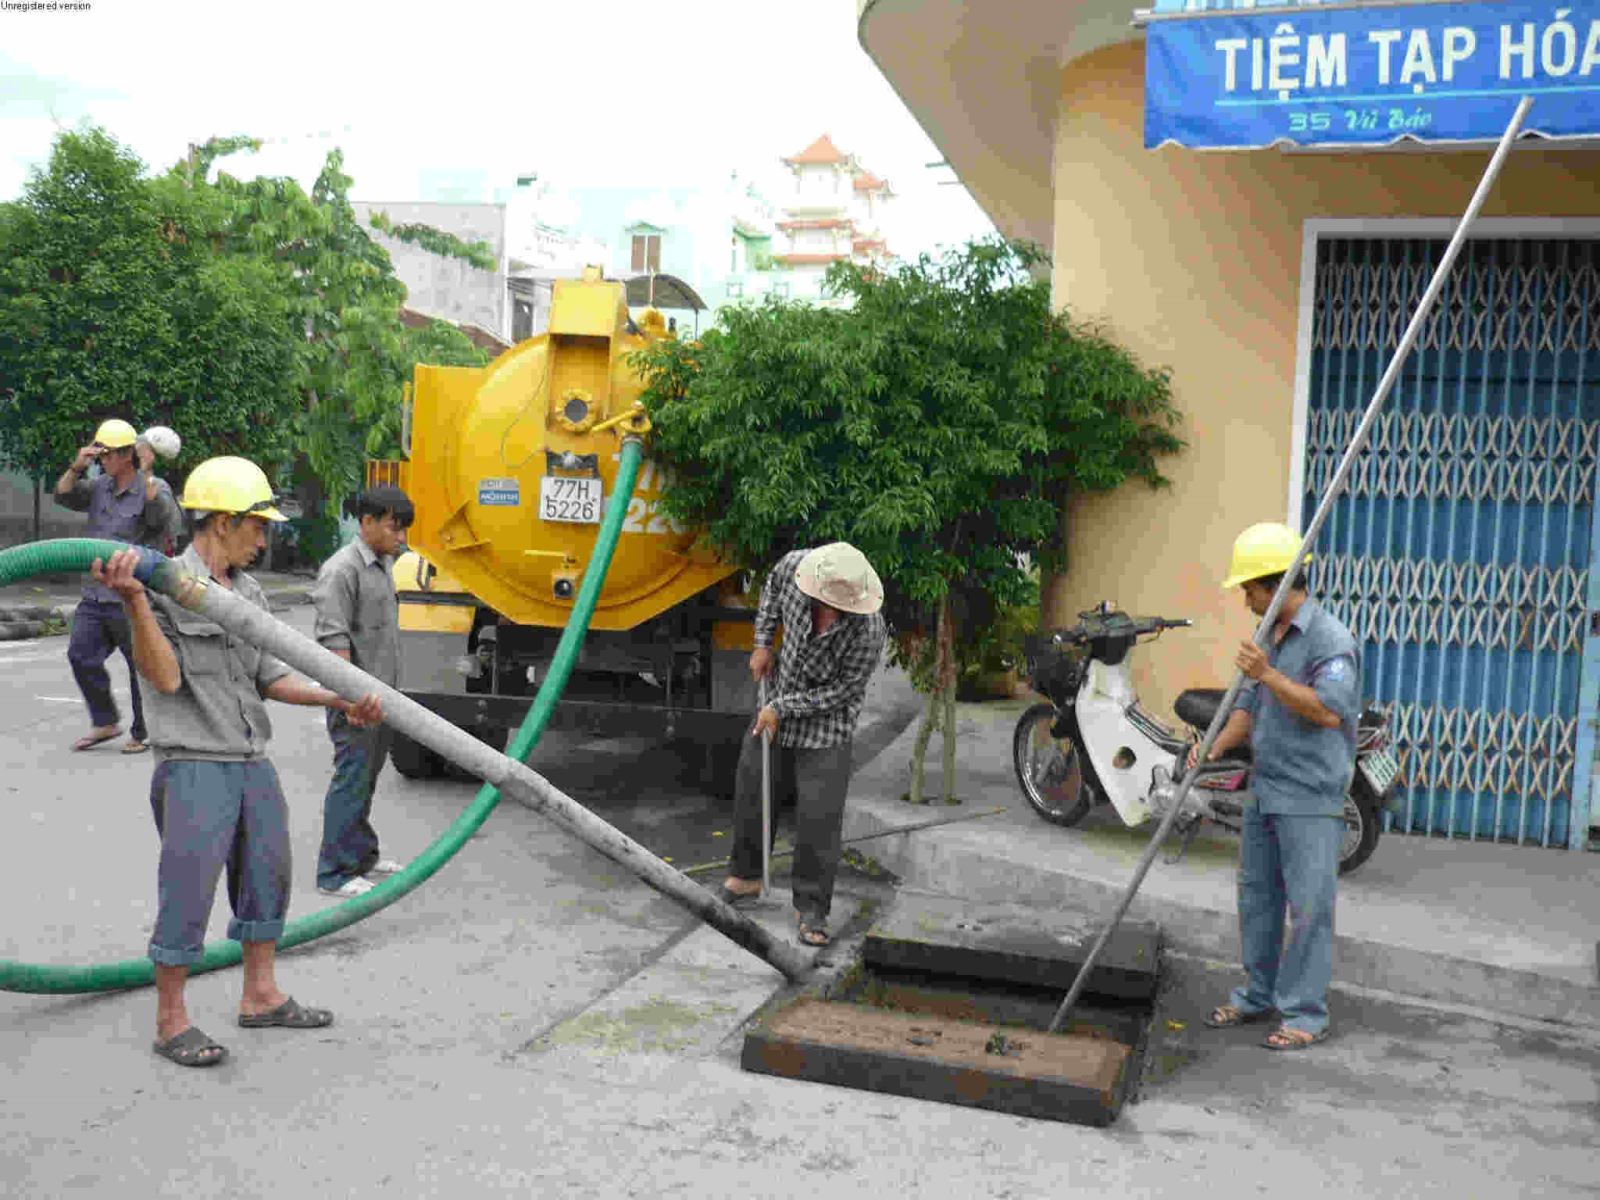 Dịch vụ hút bể phốt tại huyện Giao Thủy - Nam Định - giảm giá 20%